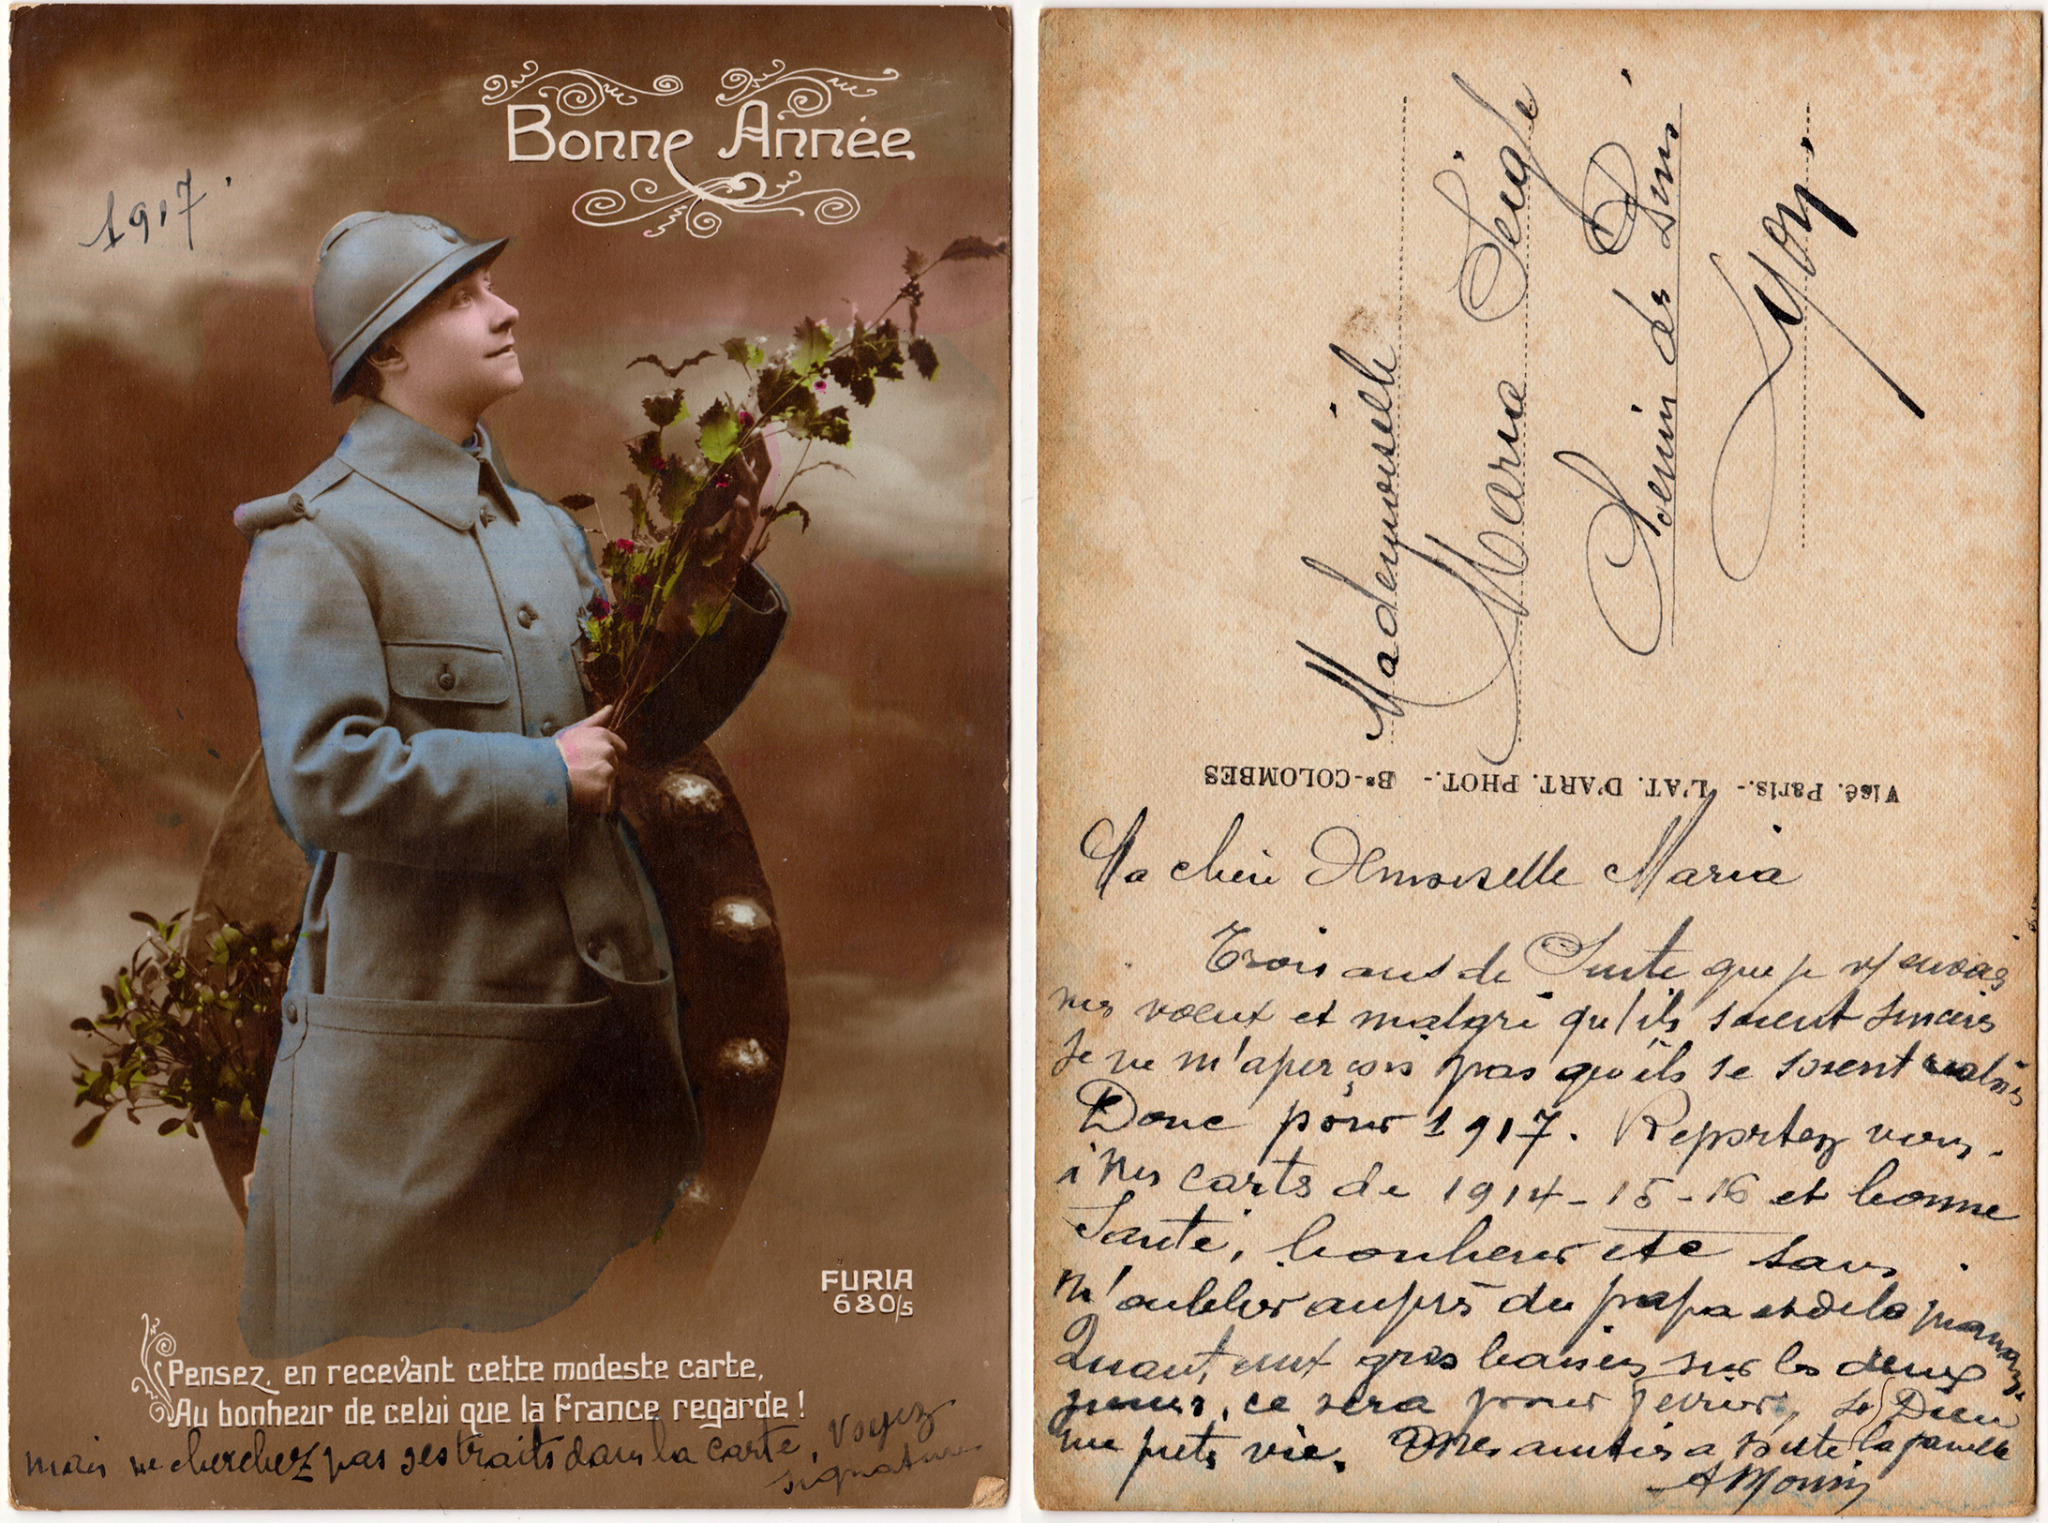 Cartes postales patriotiques françaises de la Grande Guerre - recensement - Page 3 F09806fb72e0067b8a1256137c850d5e88f8a4ea